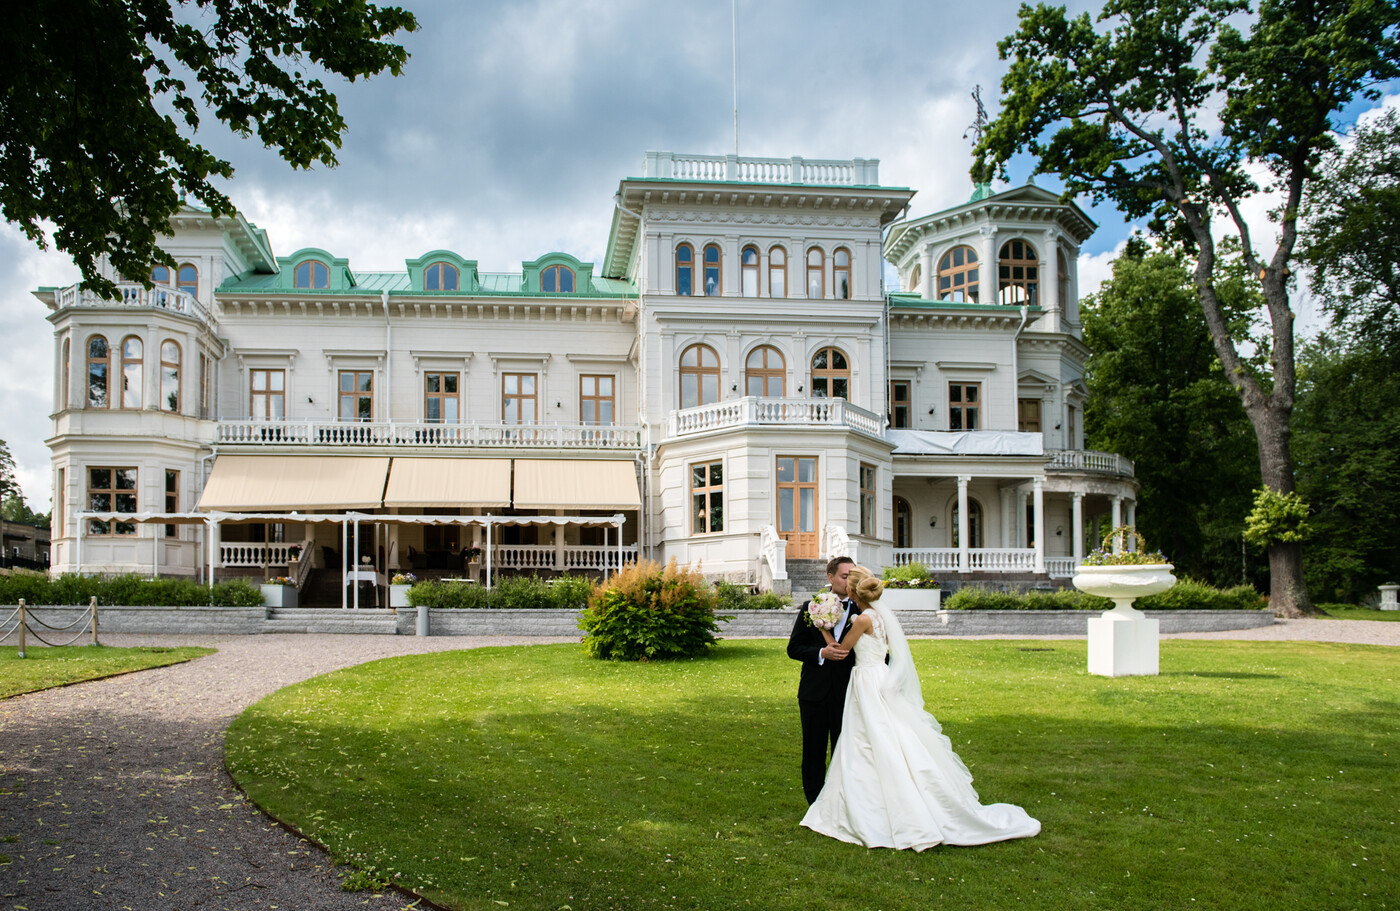 Bröllop på Engeltofta - Gävle